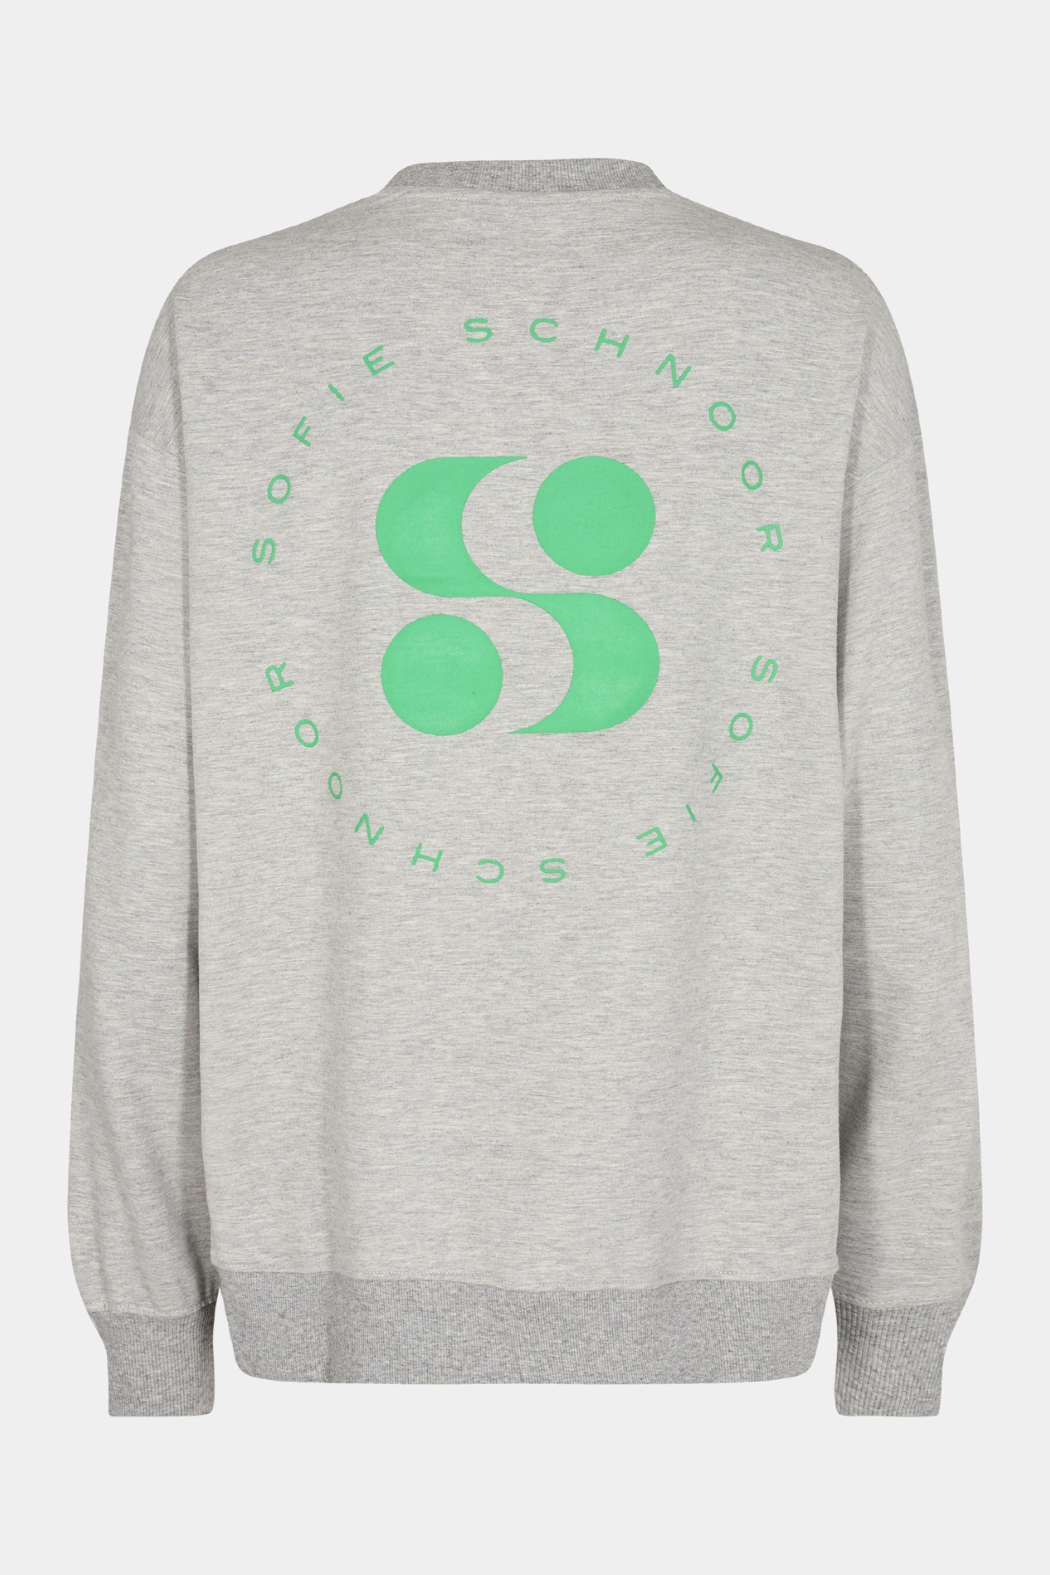 S232331 sweatshirt, grey melange